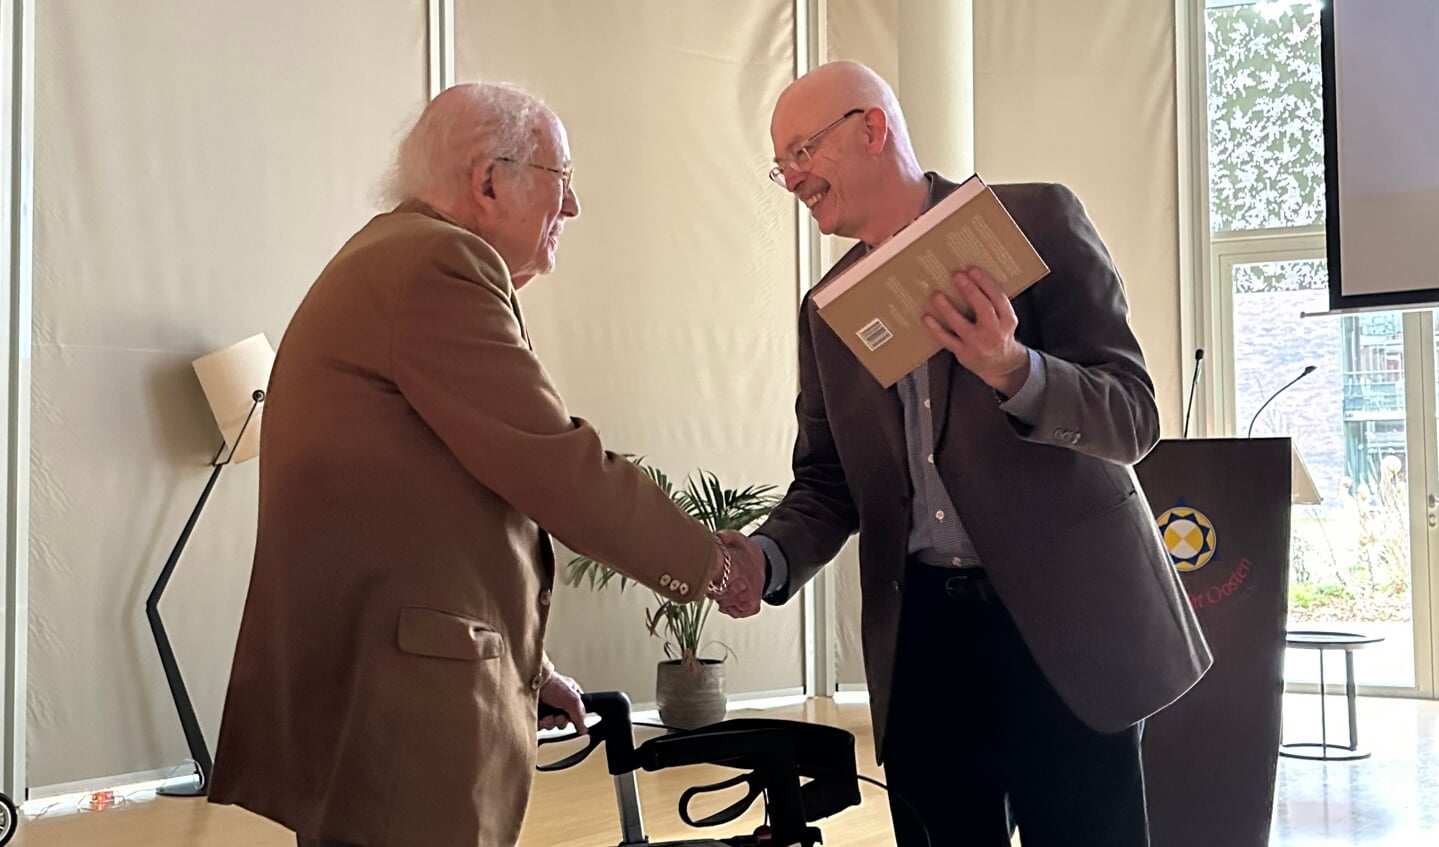 Auteur Henk Haenen overhandigt op 15 november aan Herman van Praag de biografie